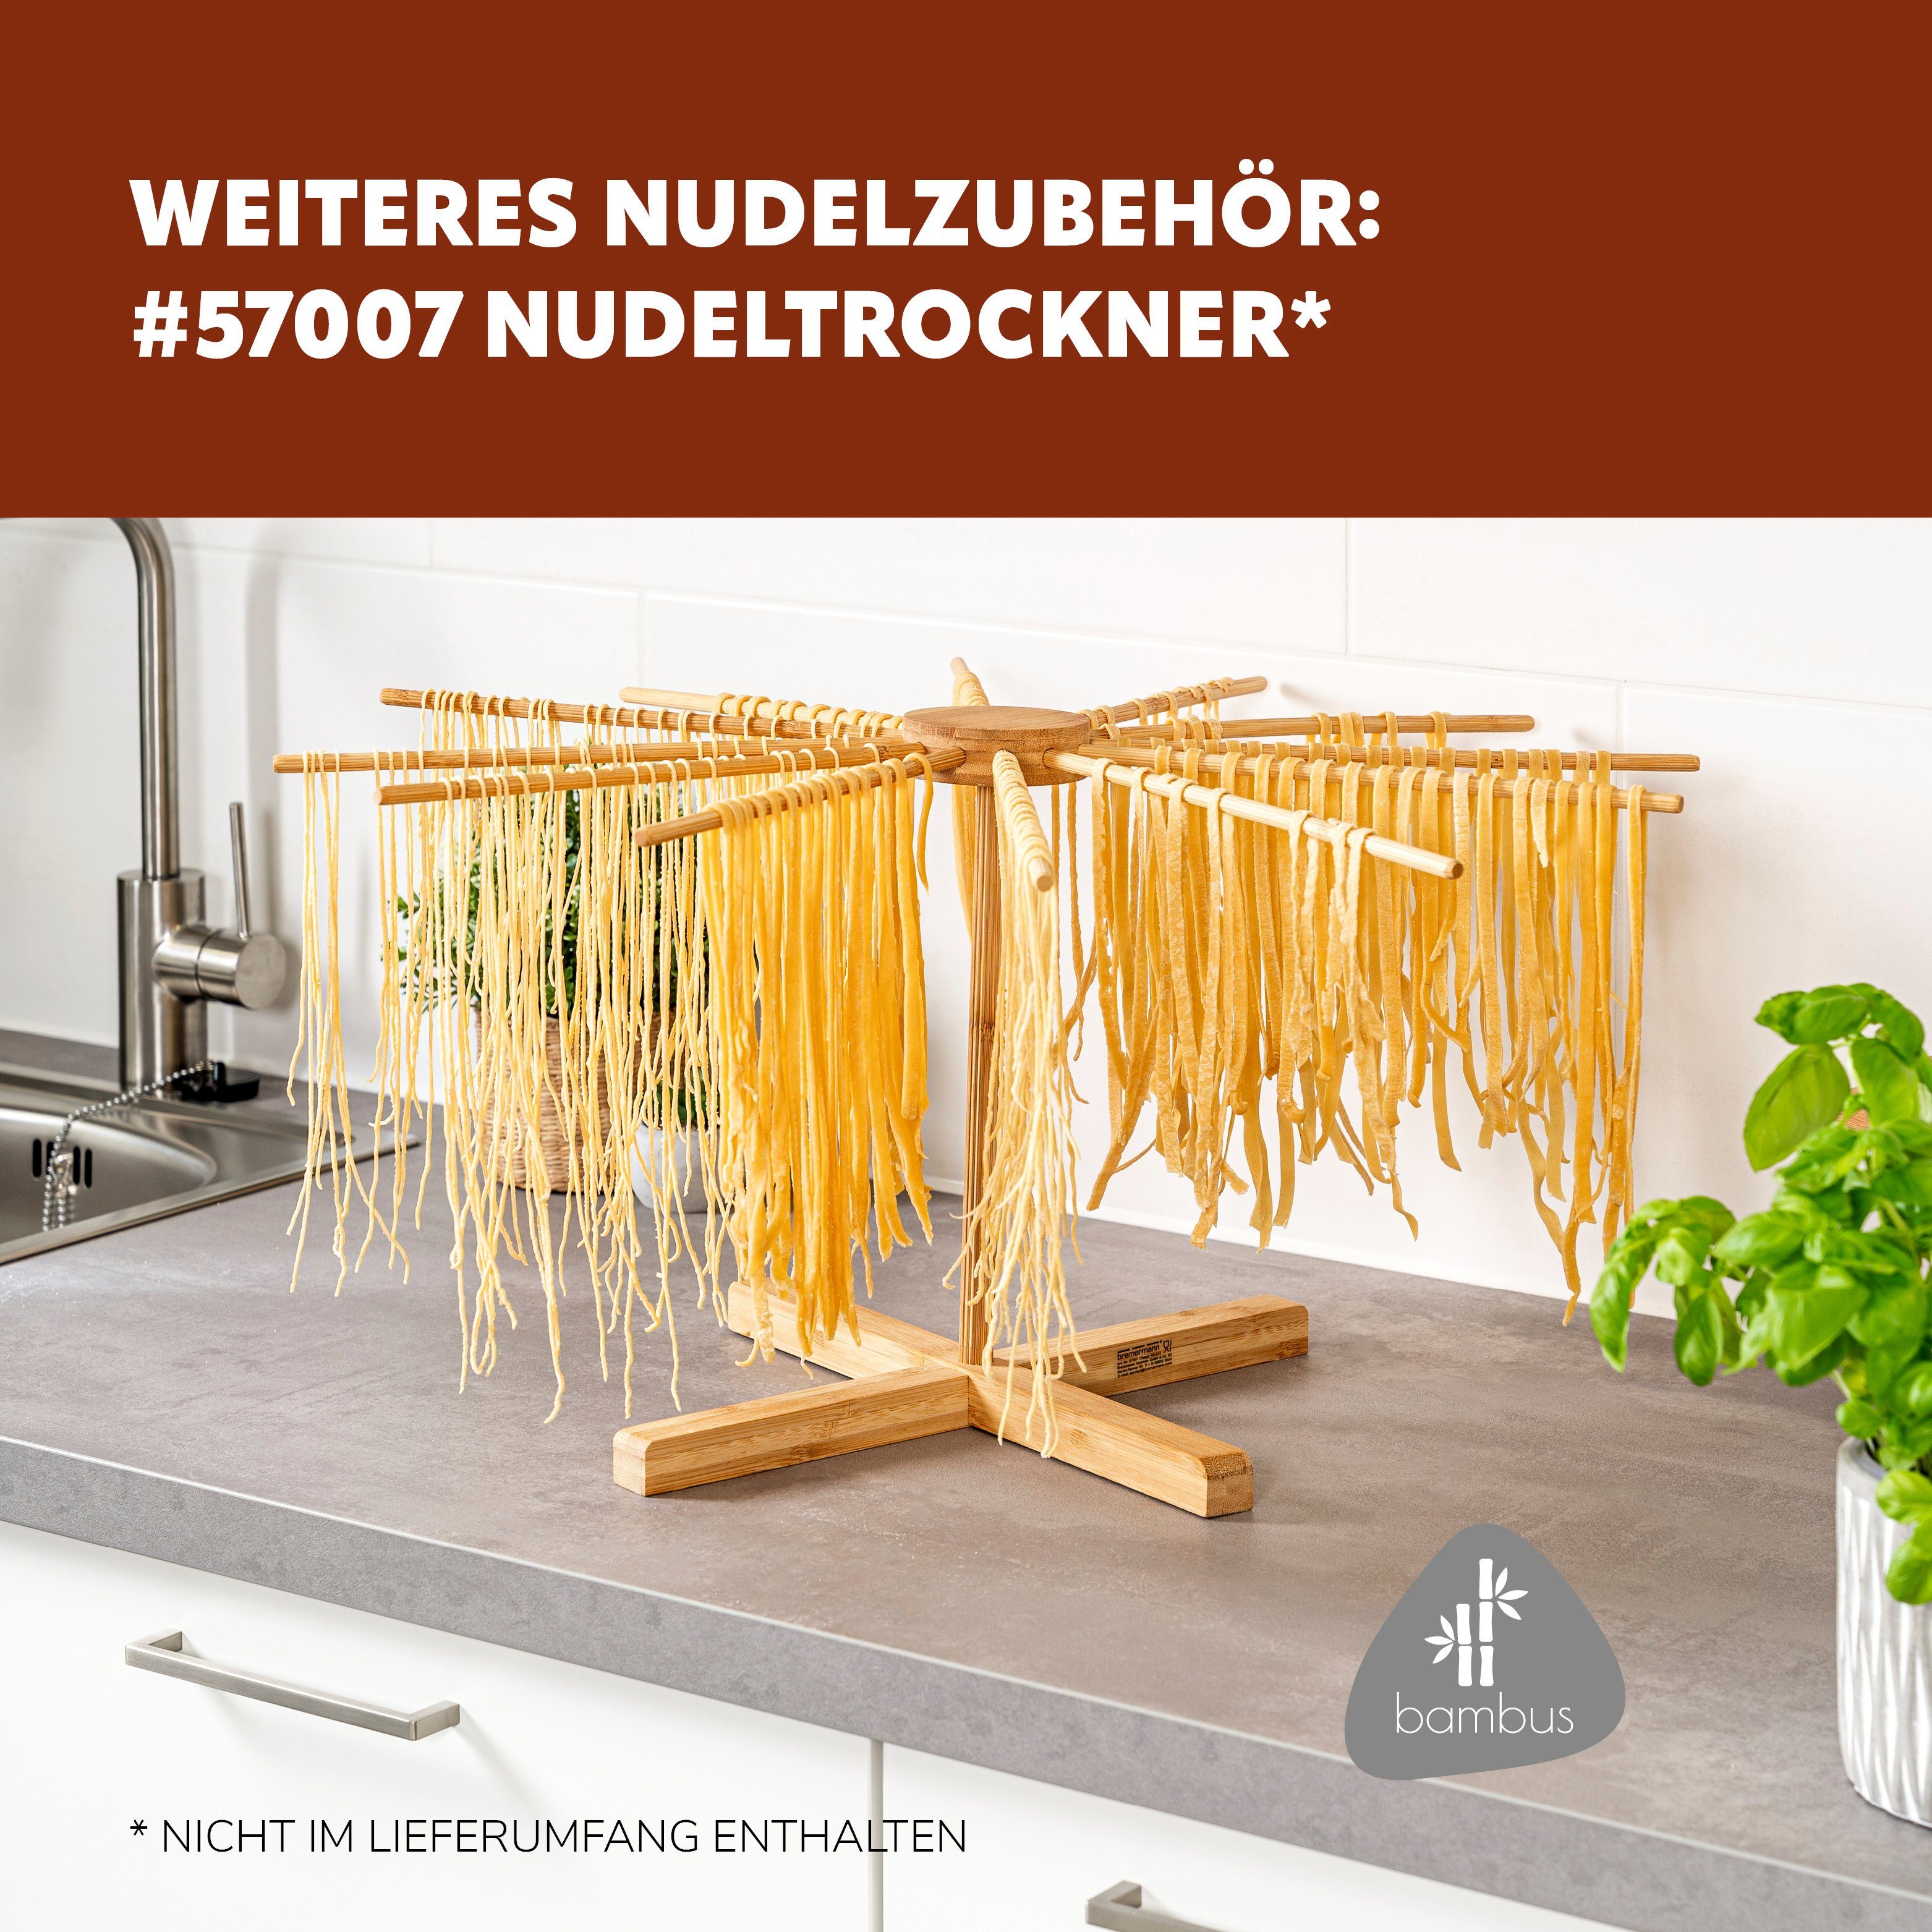 bremermann Pasta für matt Nudelmaschine - bremermann schwarz/Edelstahl Spaghetti, Nudelmaschine